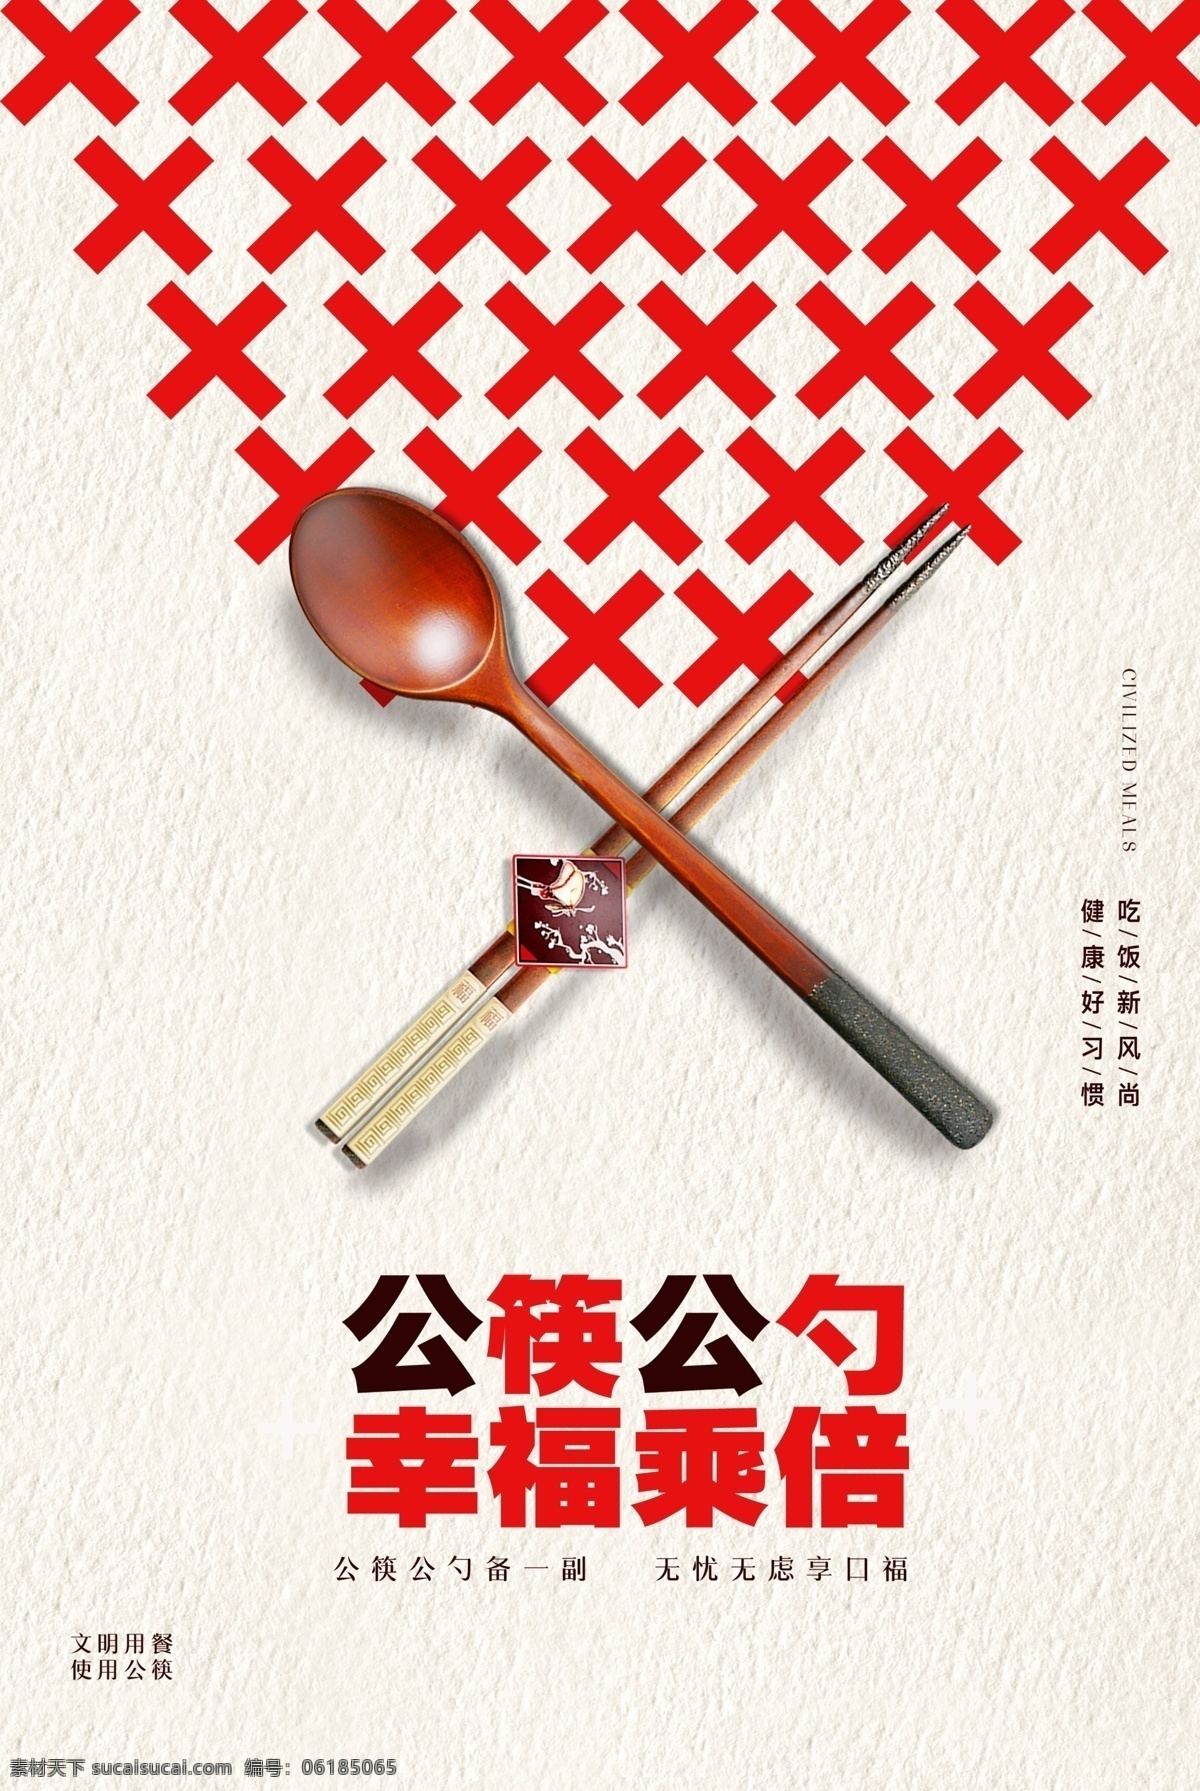 公筷公勺图片 公筷 公勺 幸福加倍 宣传 海报